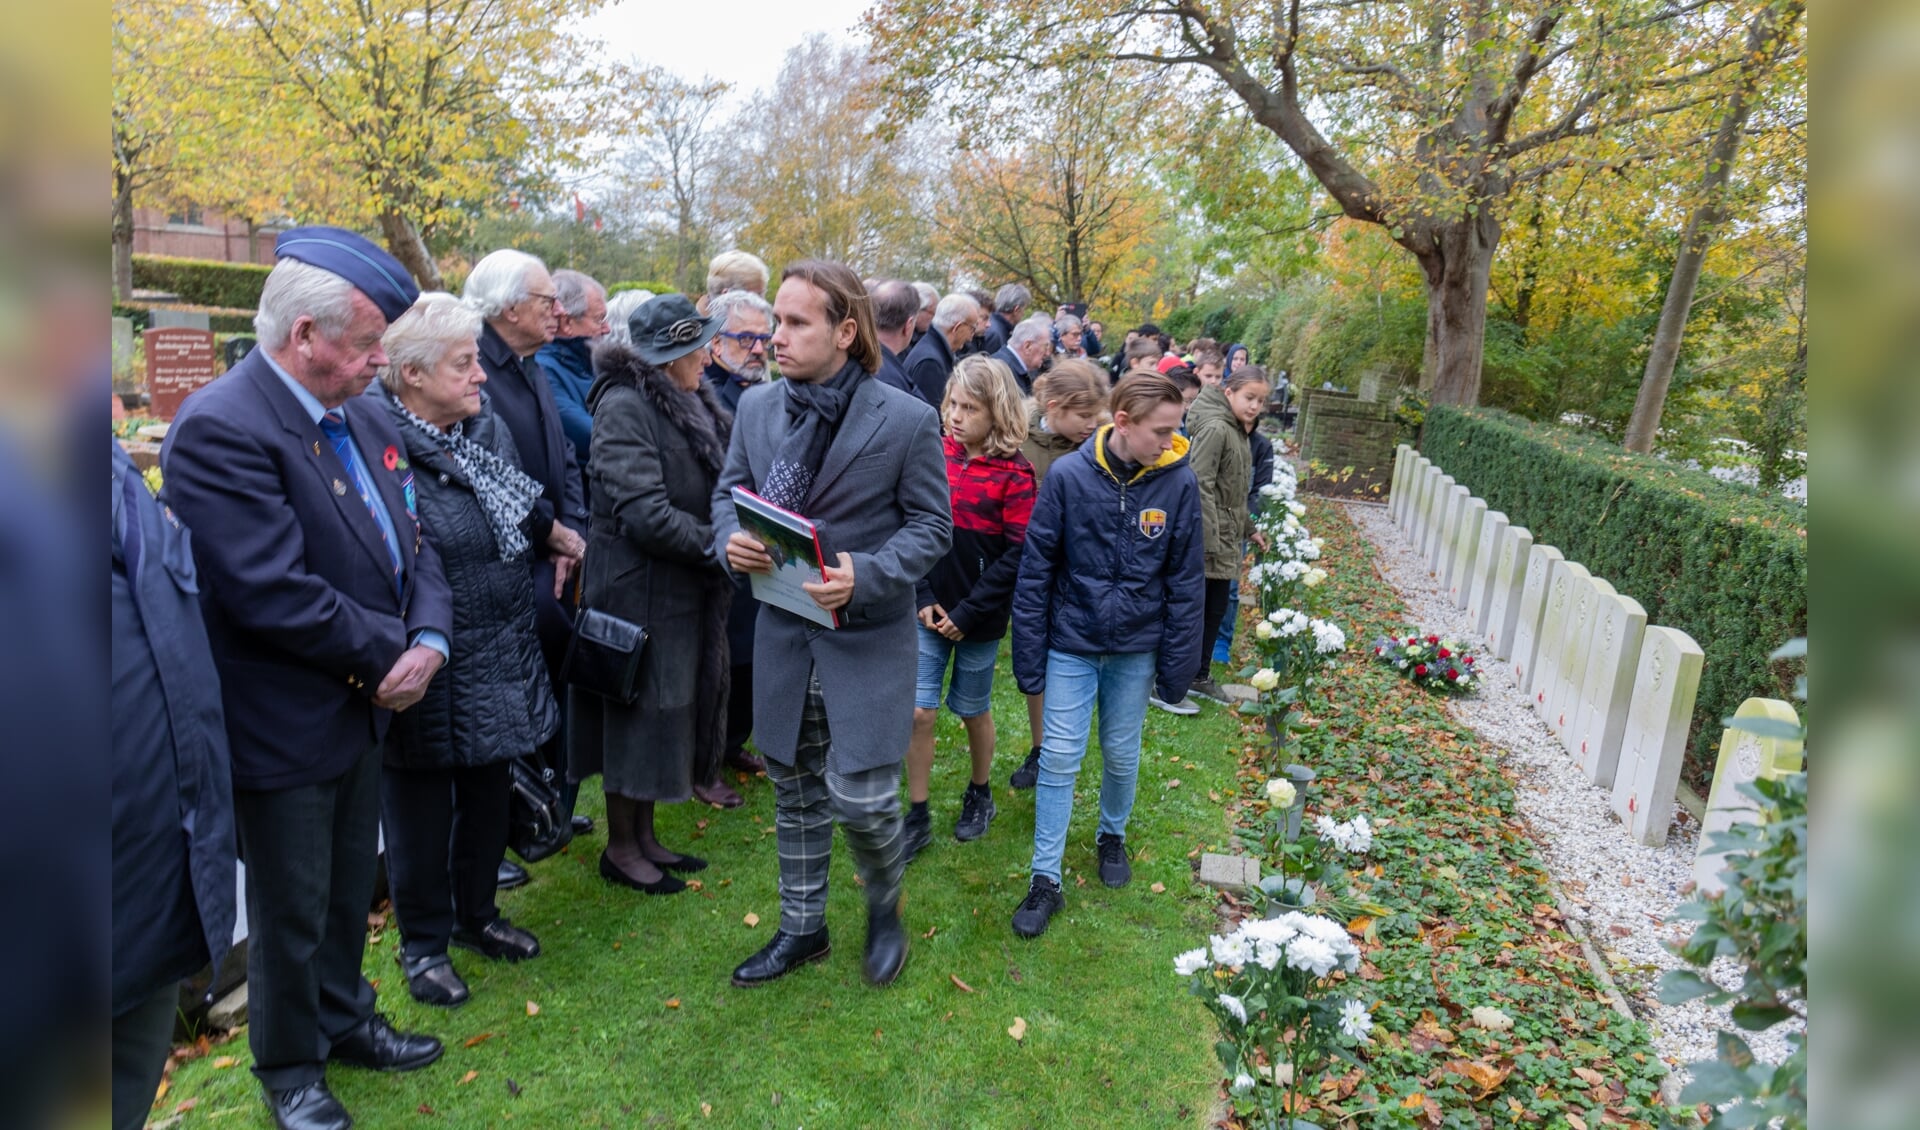 De herdenking van geallieerde slachtoffers op 11 november zal worden gecombineerd met de 4 mei herdenking.